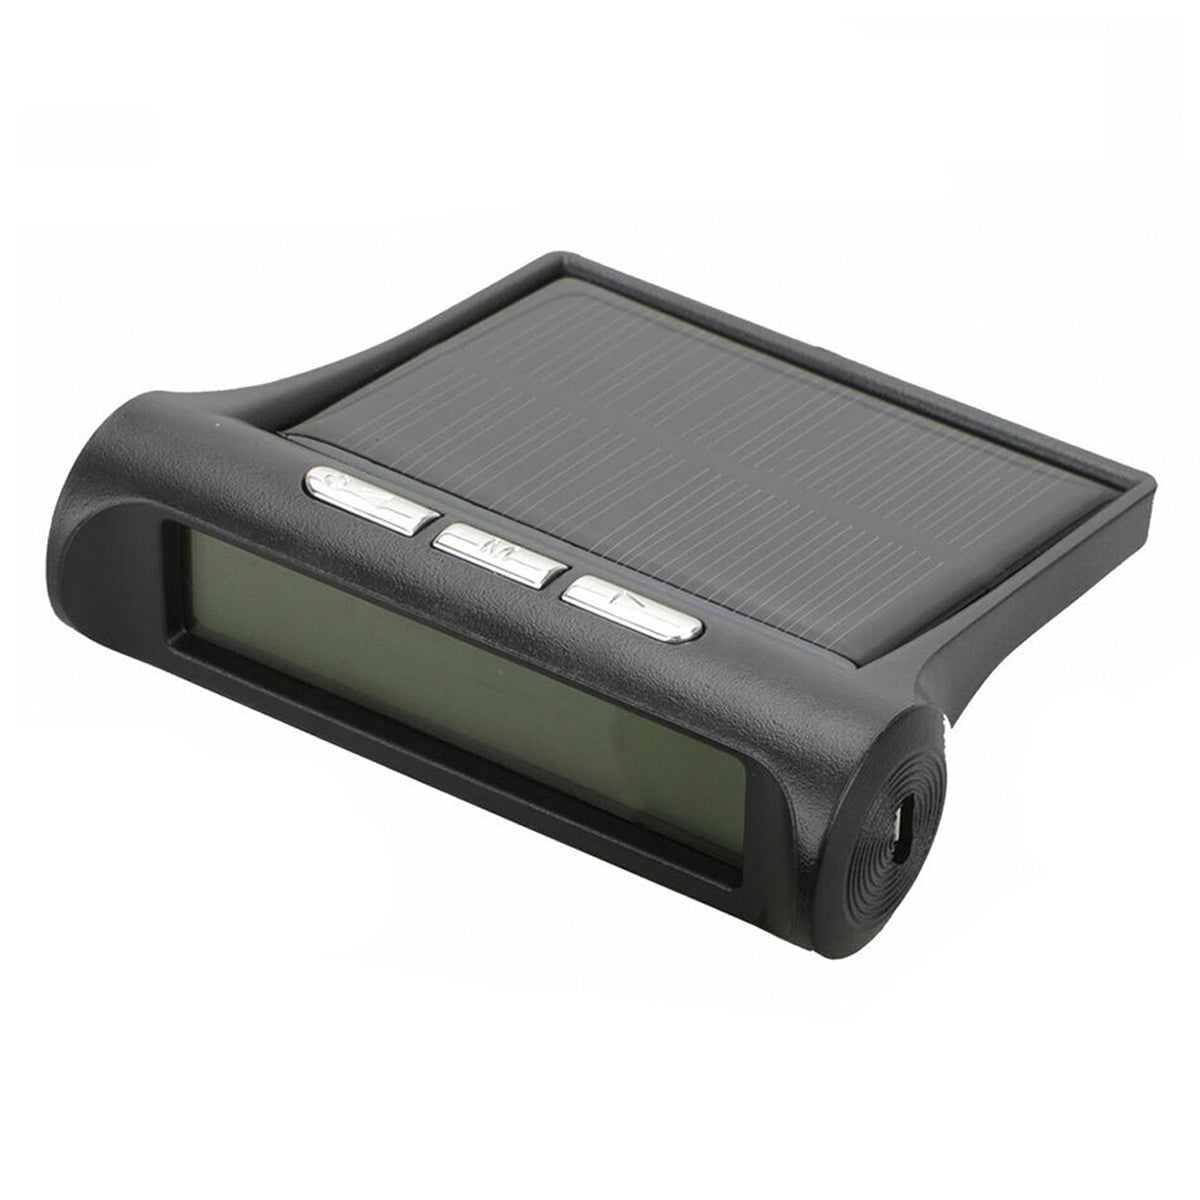 Slate Gray Solar TPMS Tire Pressure Monitor System 4 External Sensors For RV Truck Trailer